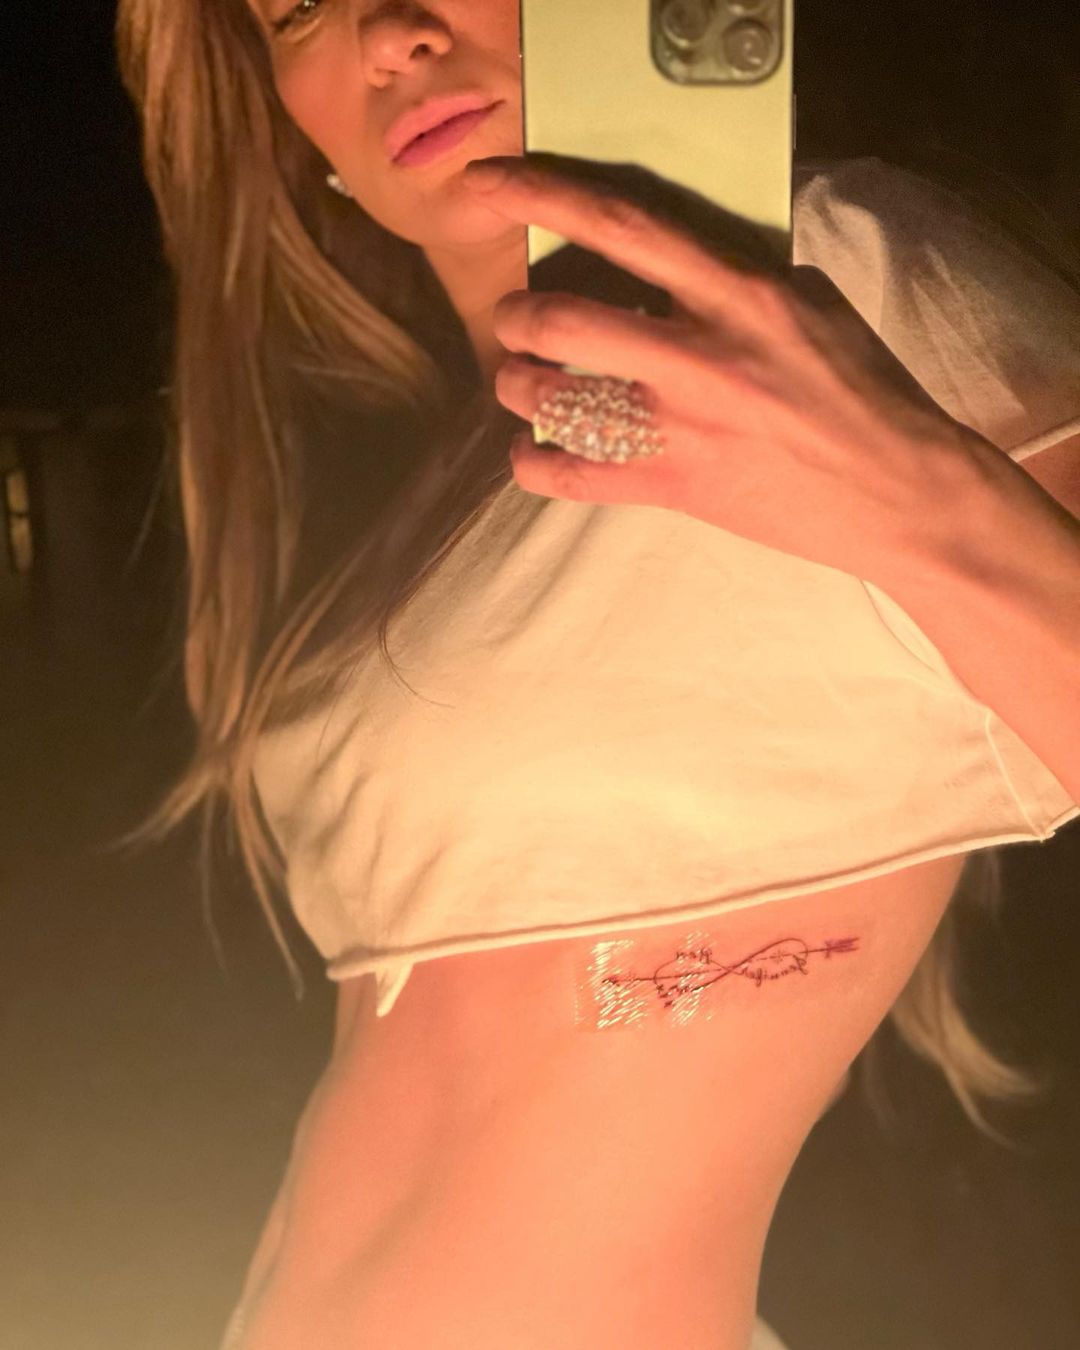 Дженніфер Лопес та Бен Аффлек відзначили День закоханих, зробивши татуювання